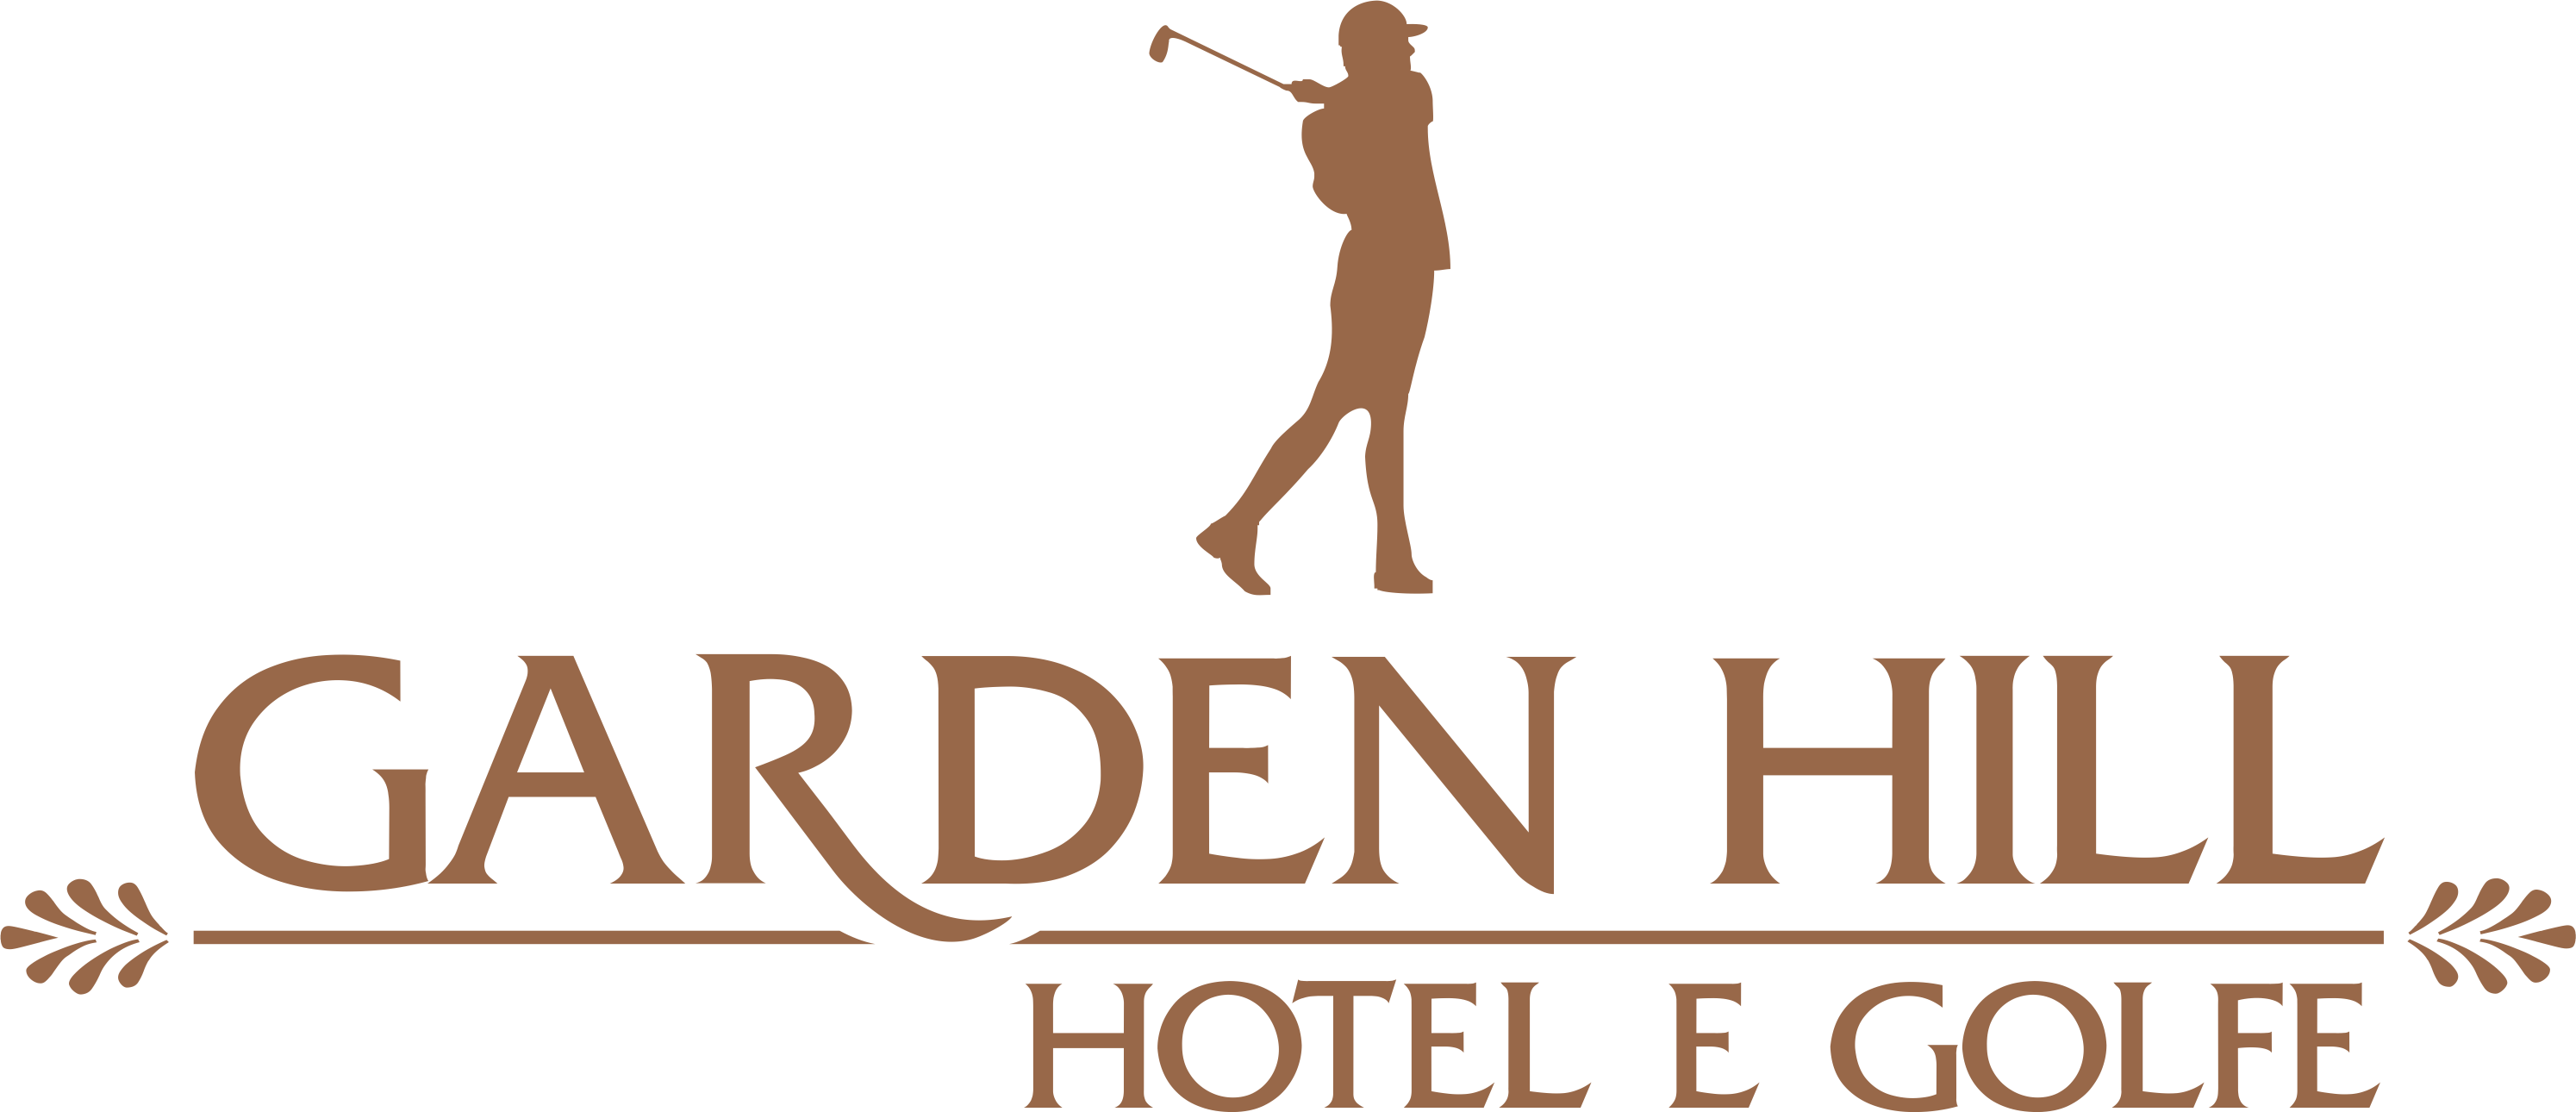 Garden Hill Hotel e Golfe - Hotéis de Luxo Brasil